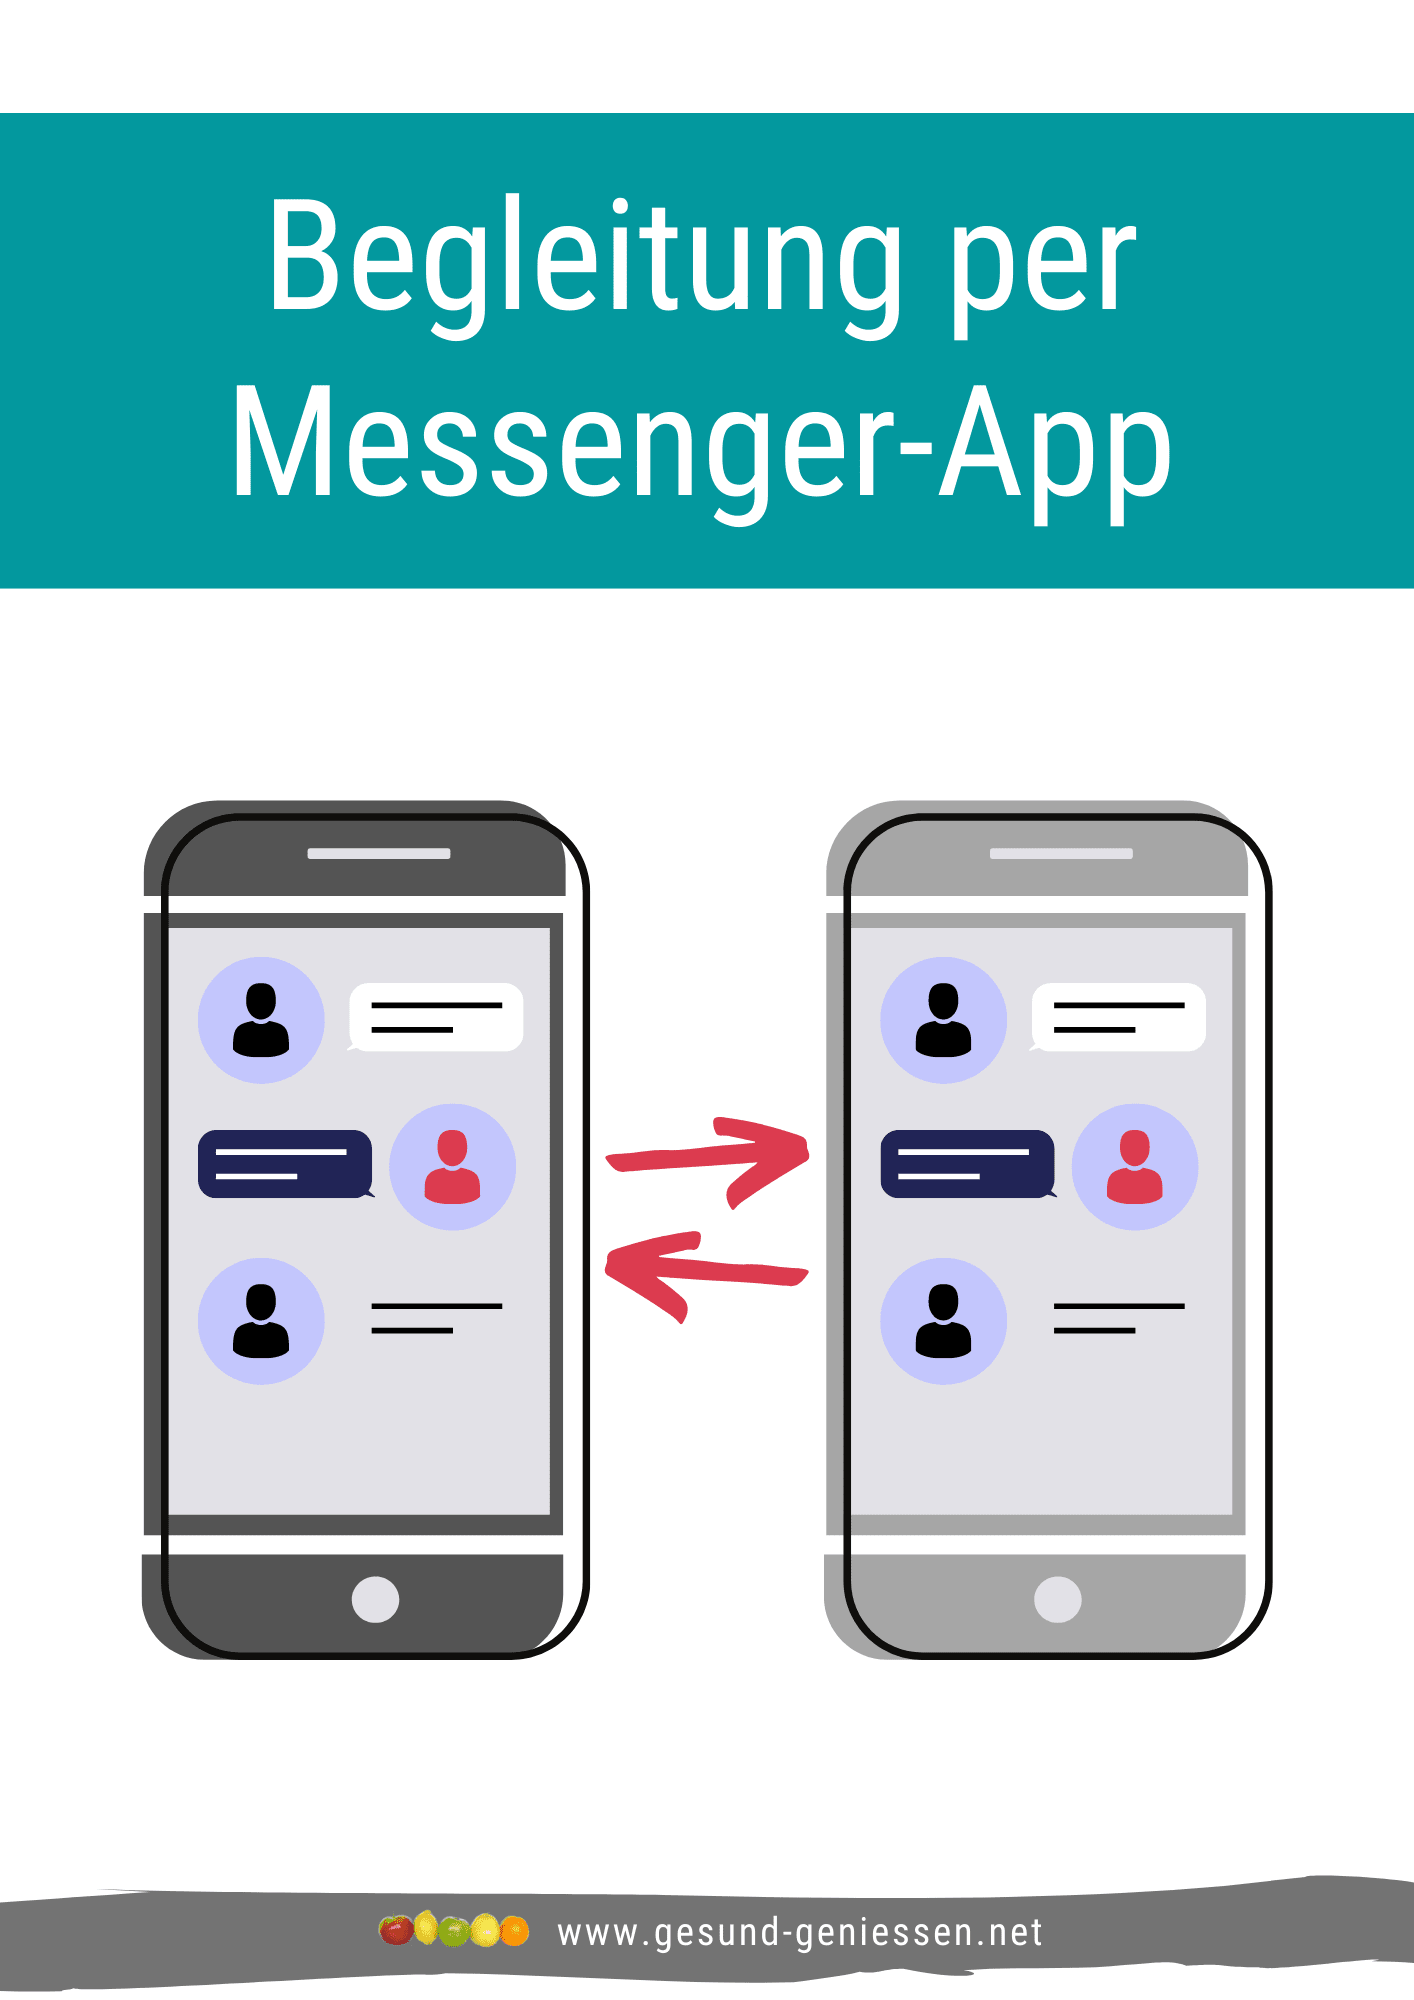 Mockup Begleitung per Messenger-App